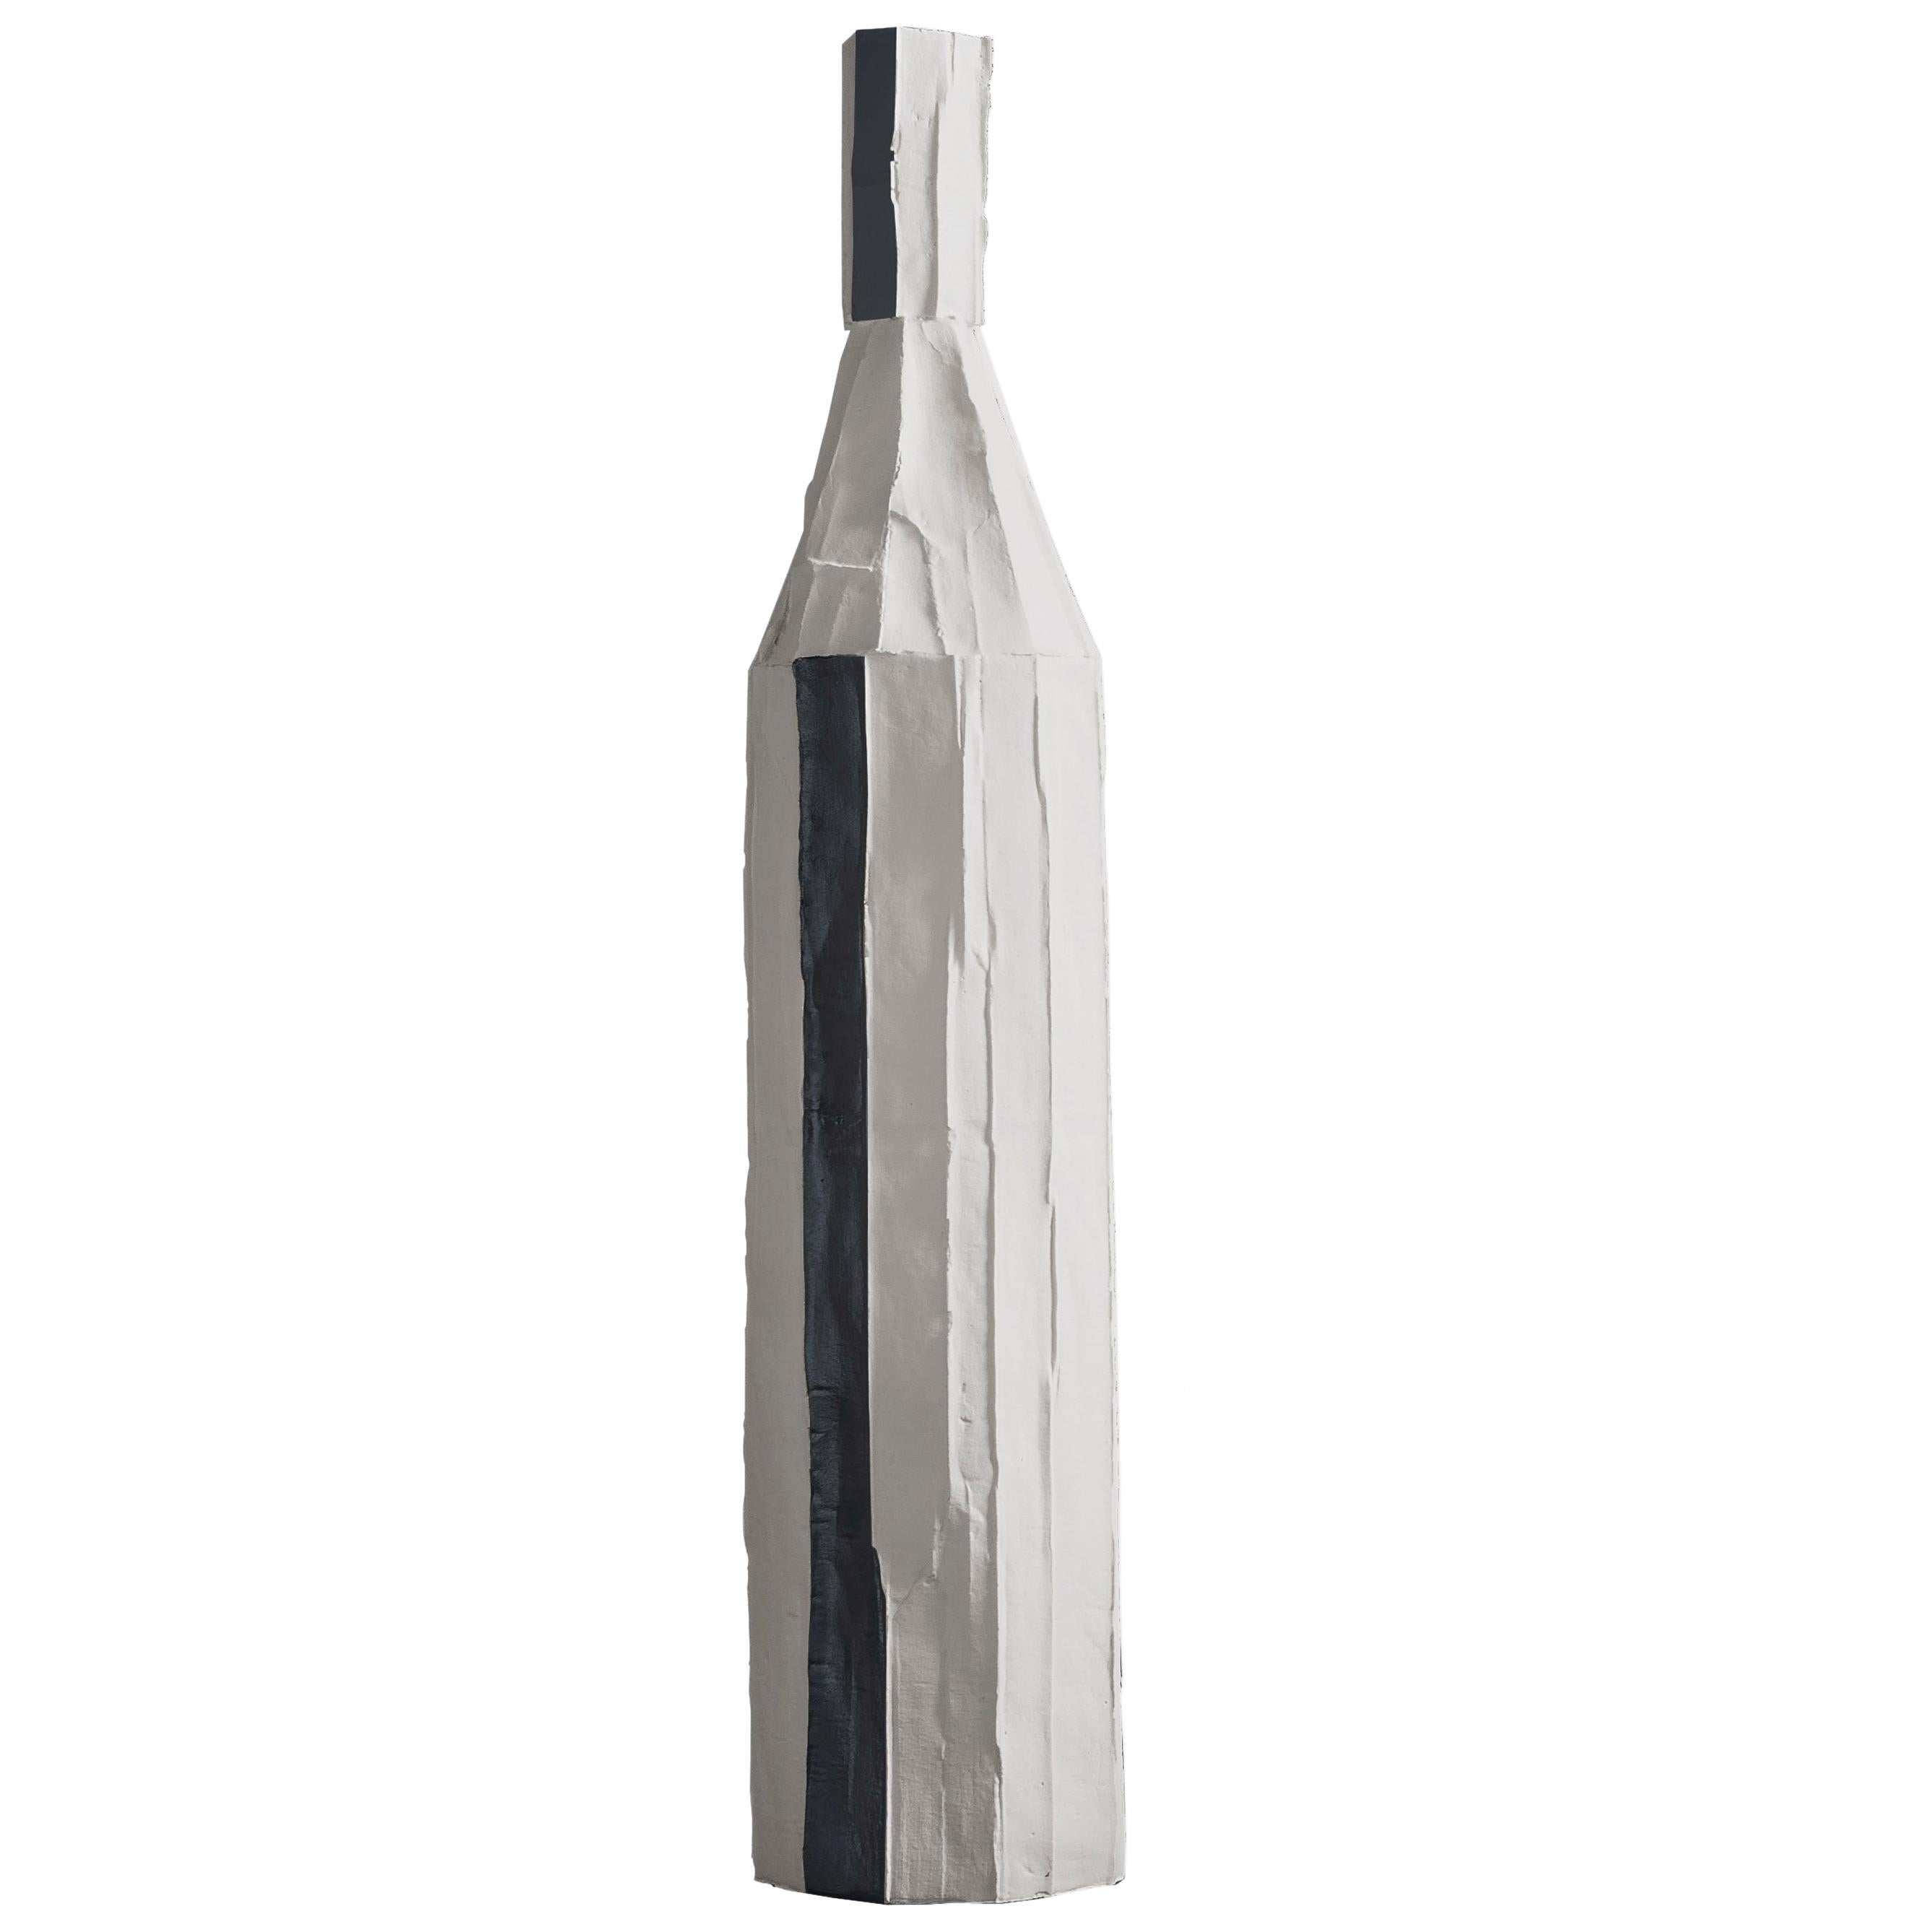 Contemporary Ceramic Decorative Bottle Corteccia Texture White and Black Insert For Sale